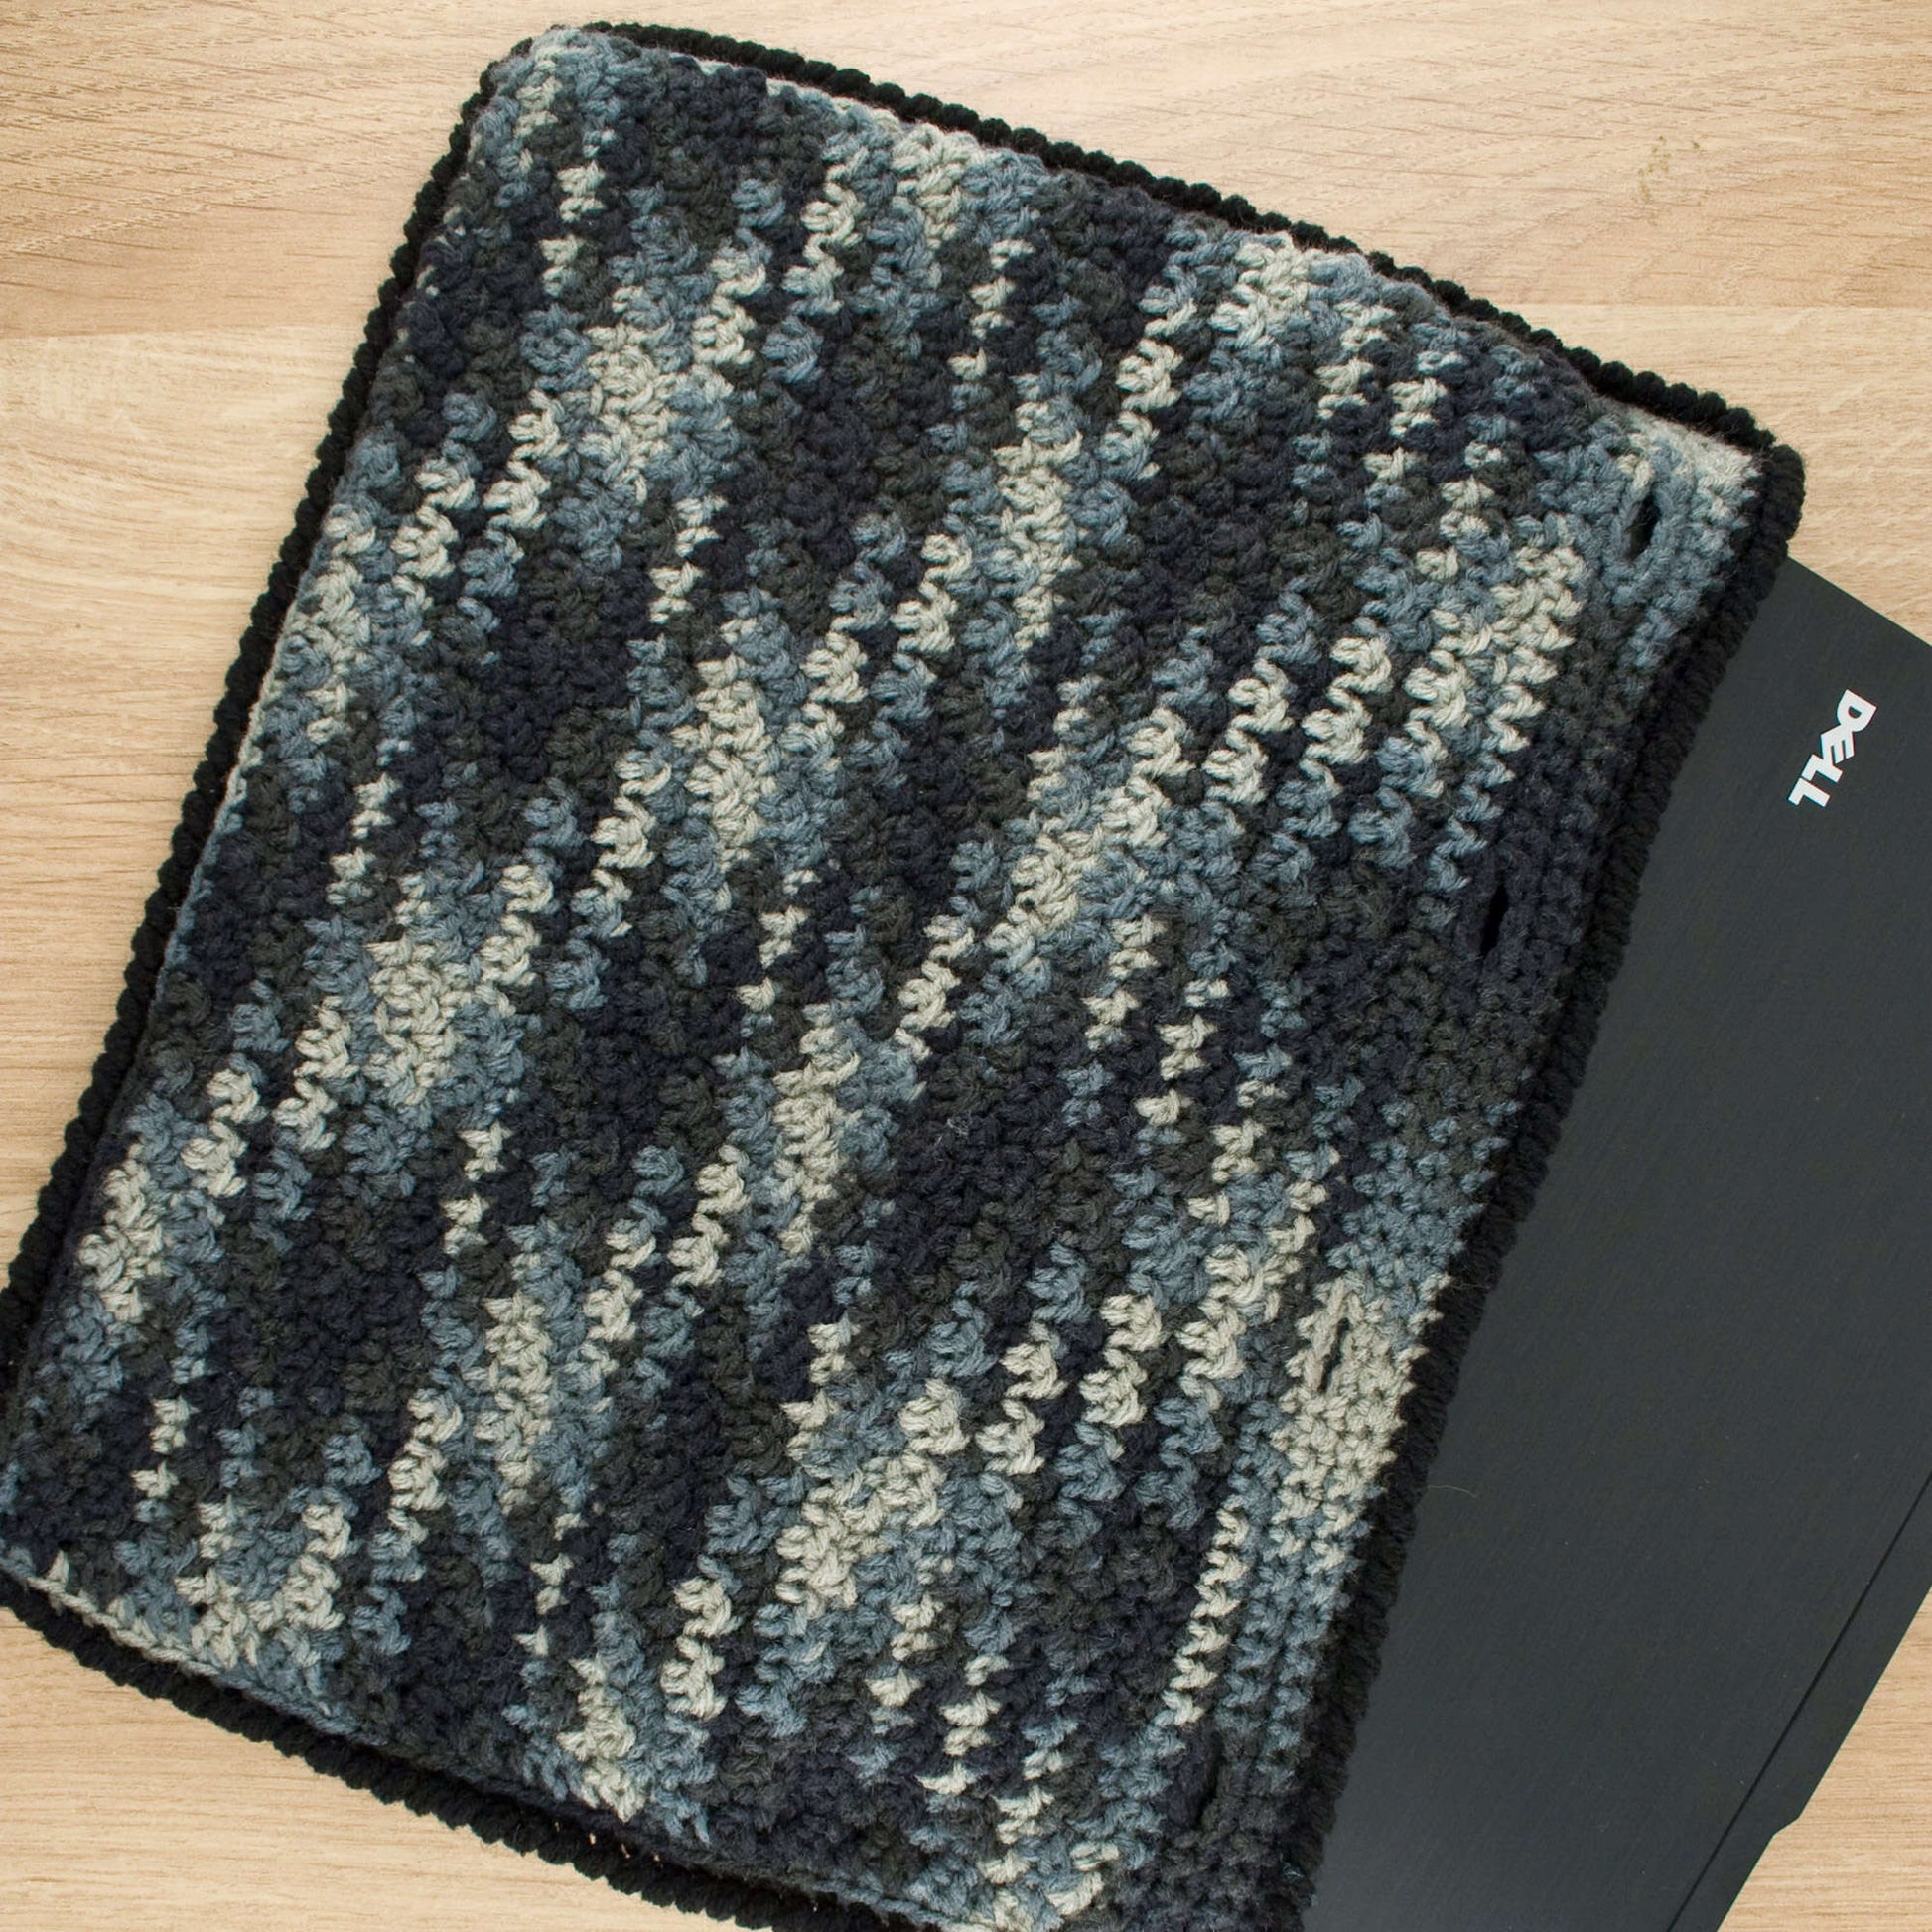 Free Red Heart Laptop Case Crochet Pattern